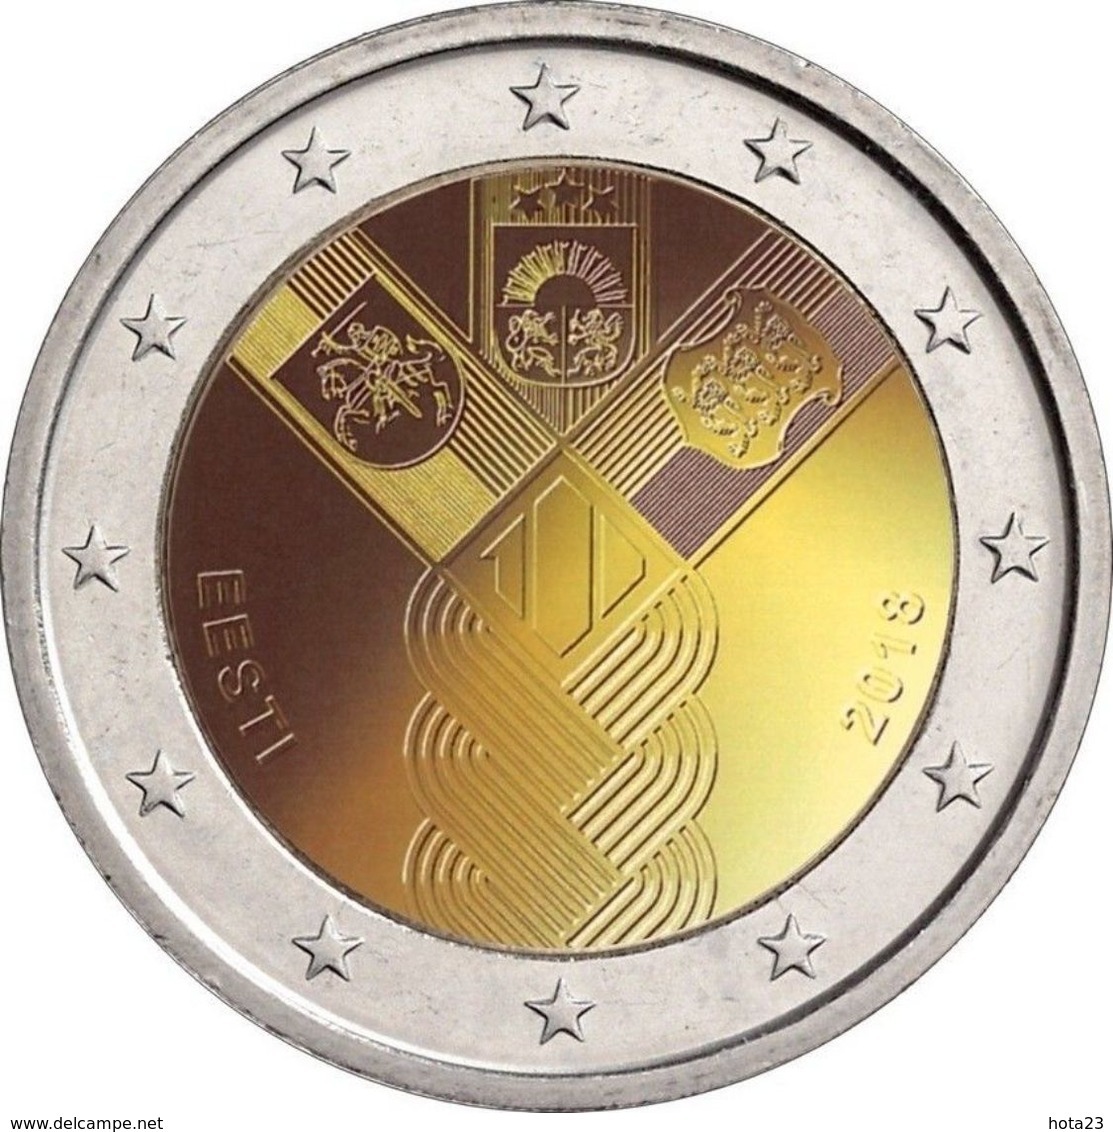 Estonia / Estland 2018 2 EURO 100 Jahrestag Der Baltischen Staaten COIN FROM MINT ROLL UNC  BALTIA  100 YEAR - Estonia